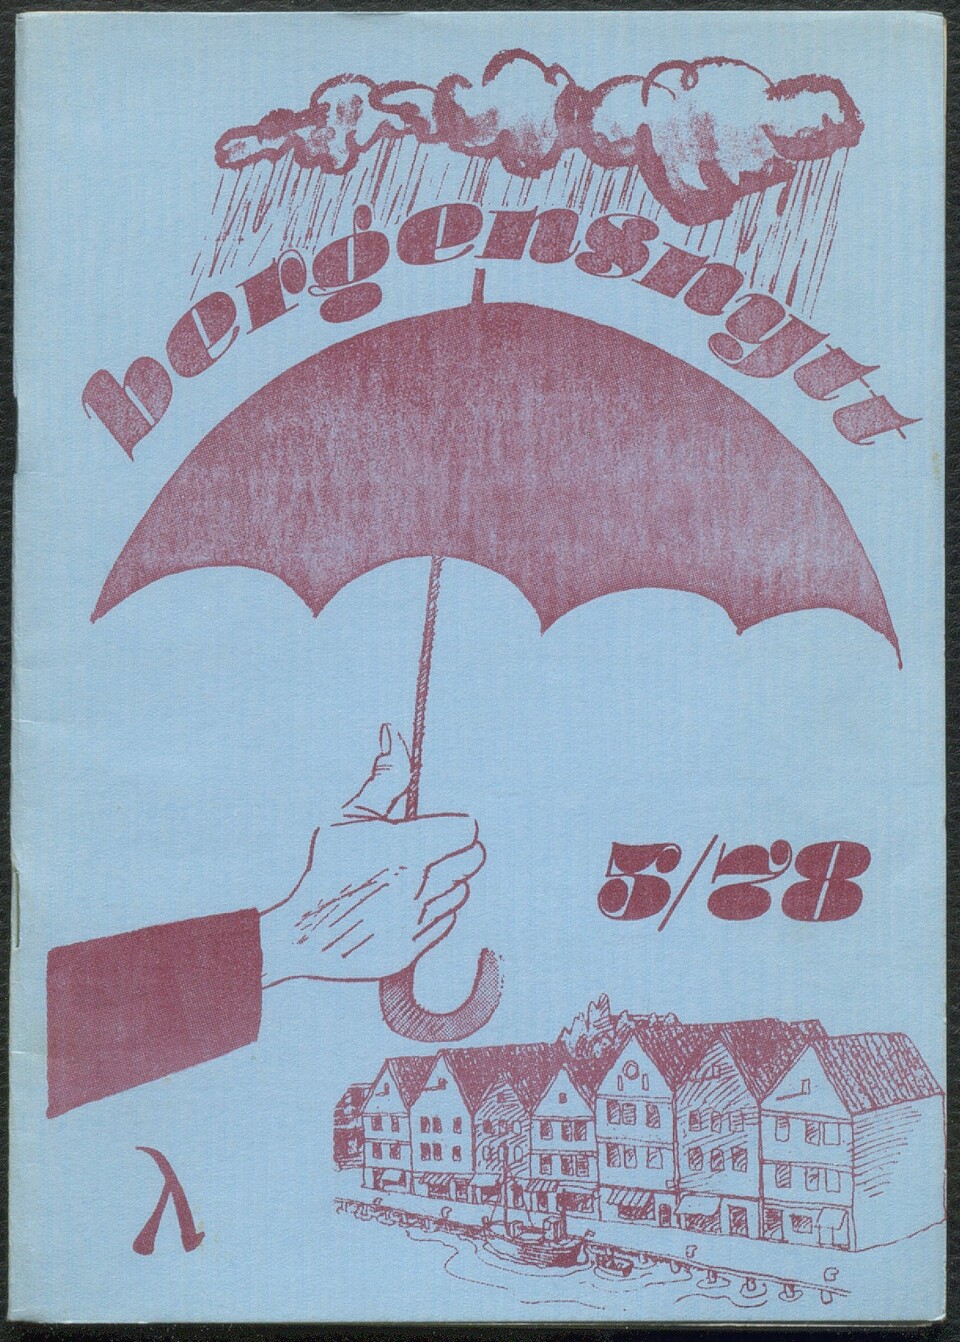 Bilde 3 av 4, naviger med pilene: Lokal høststemning på forsiden av utgave 5/1978. Skeivt arkiv, UBB.